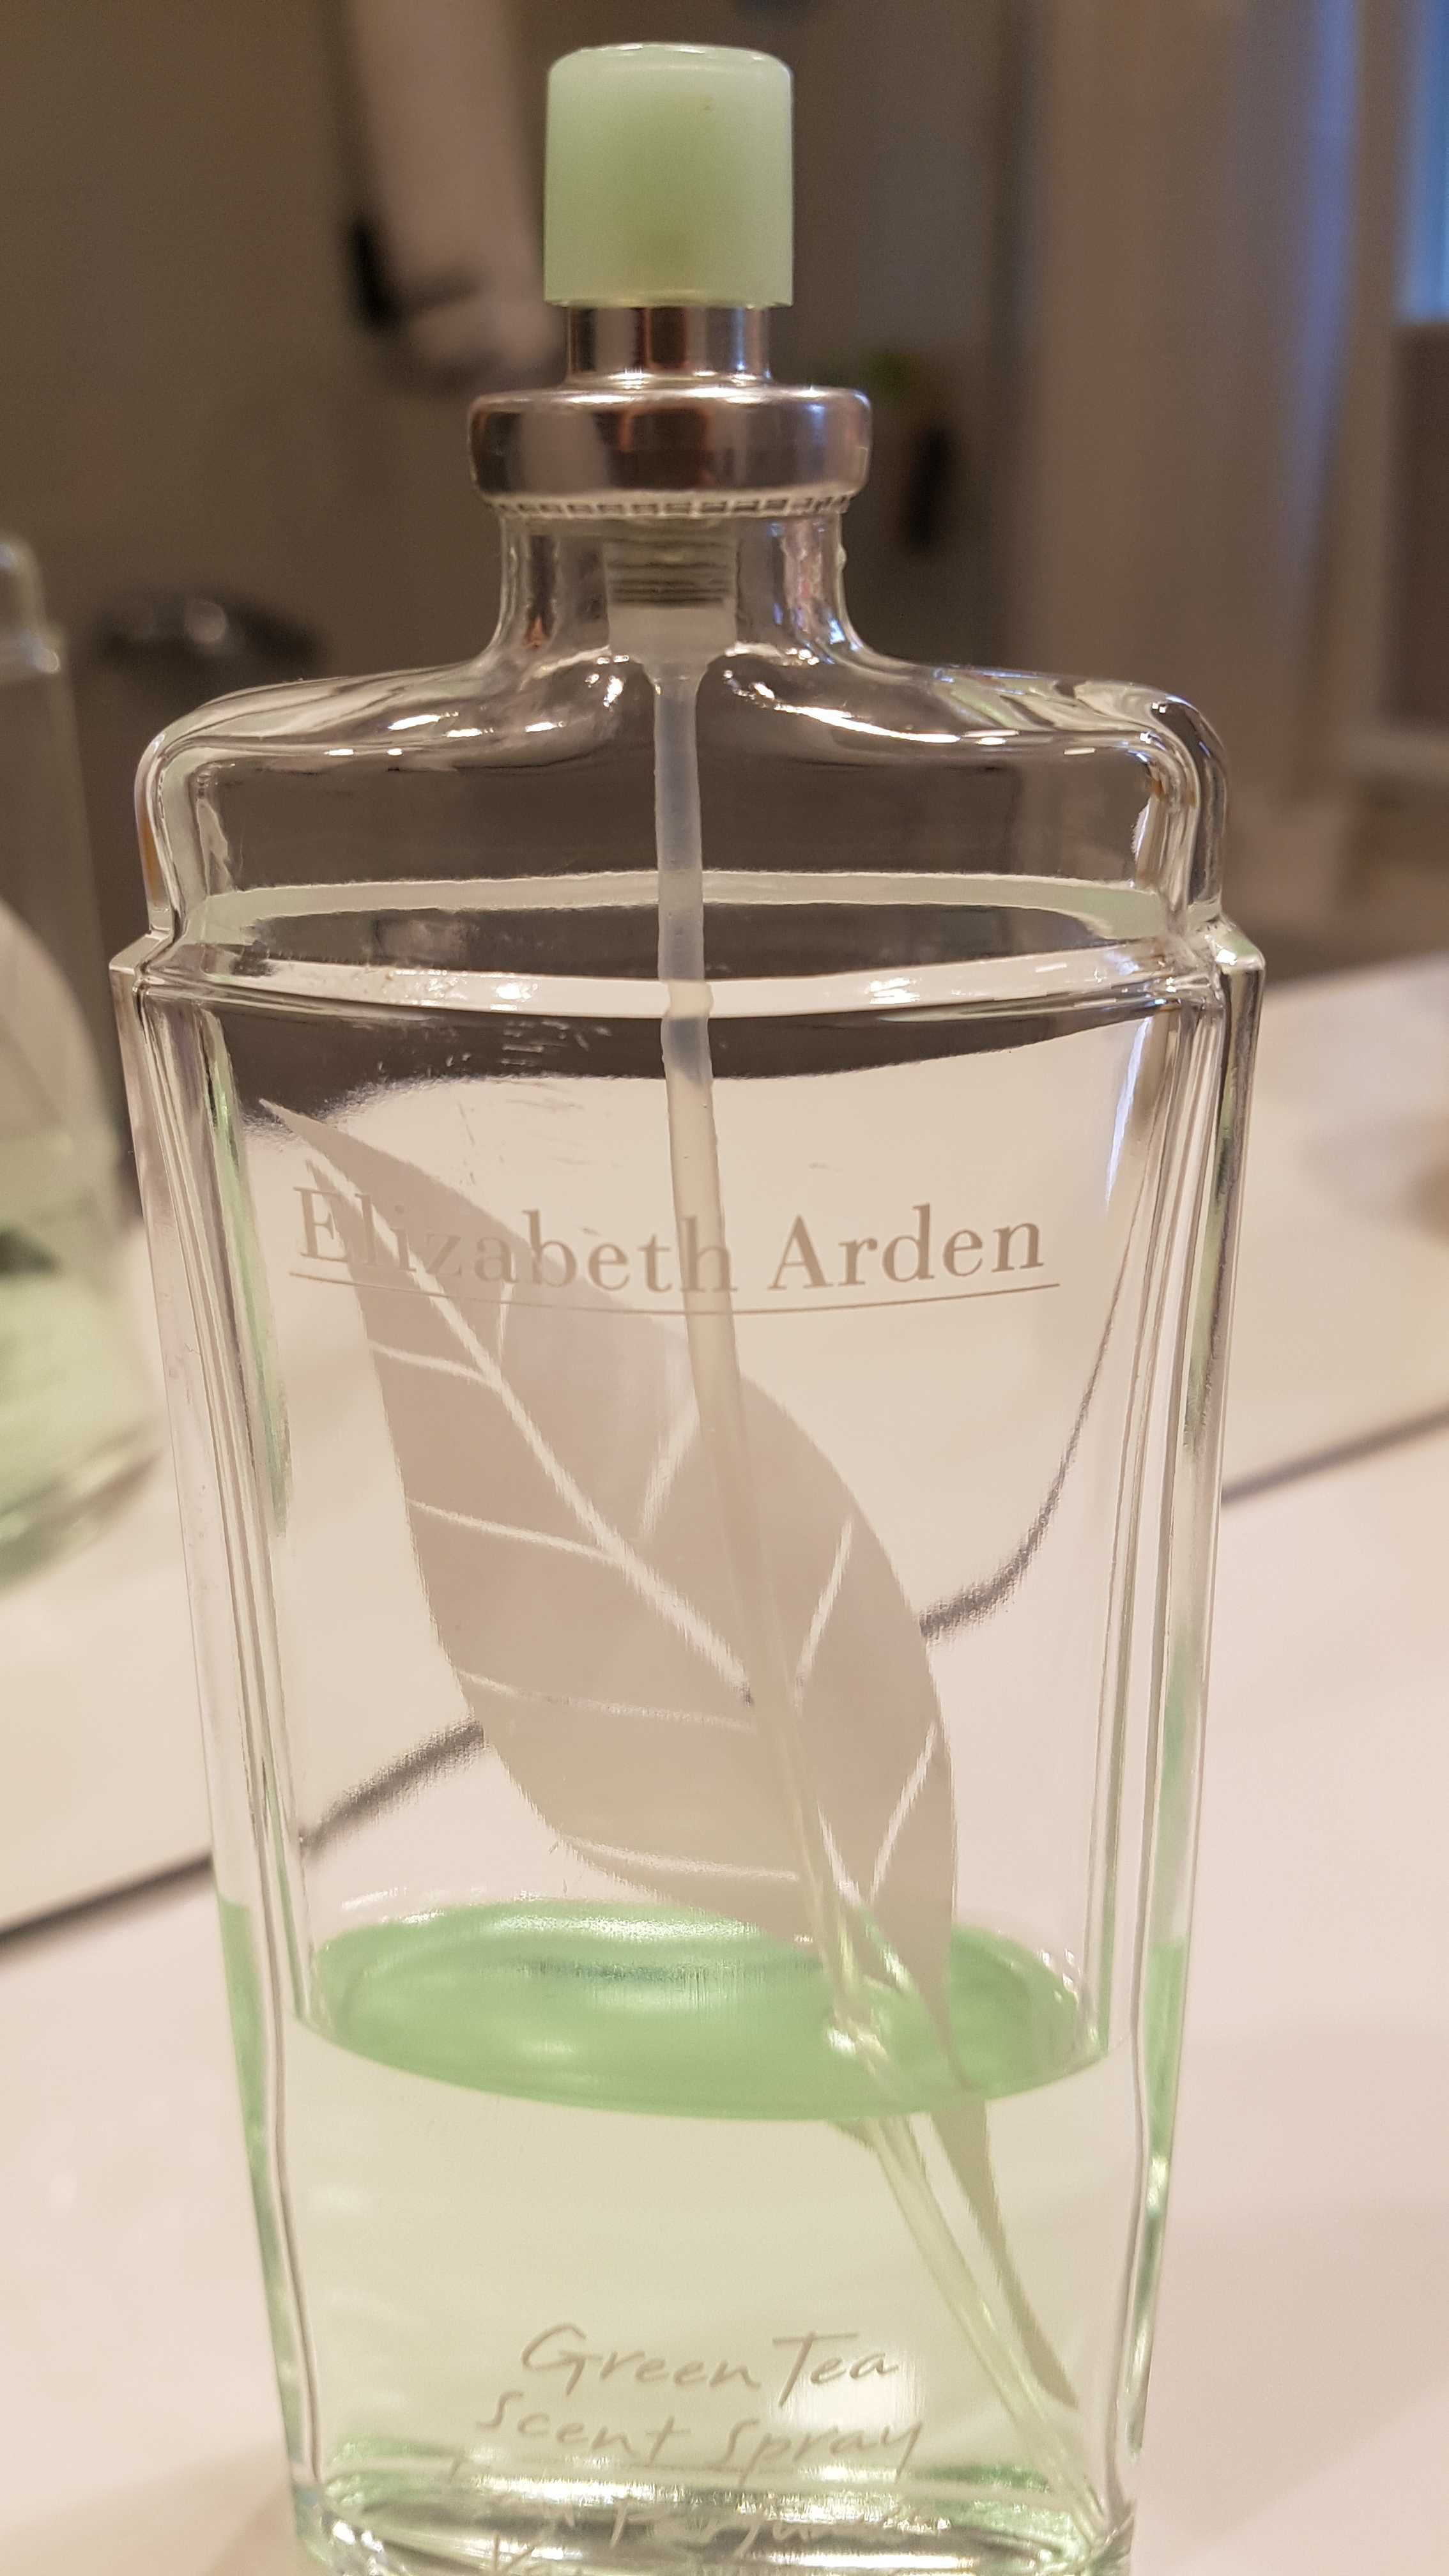 Green Tea Woda perfumowana Elisabeth Arden